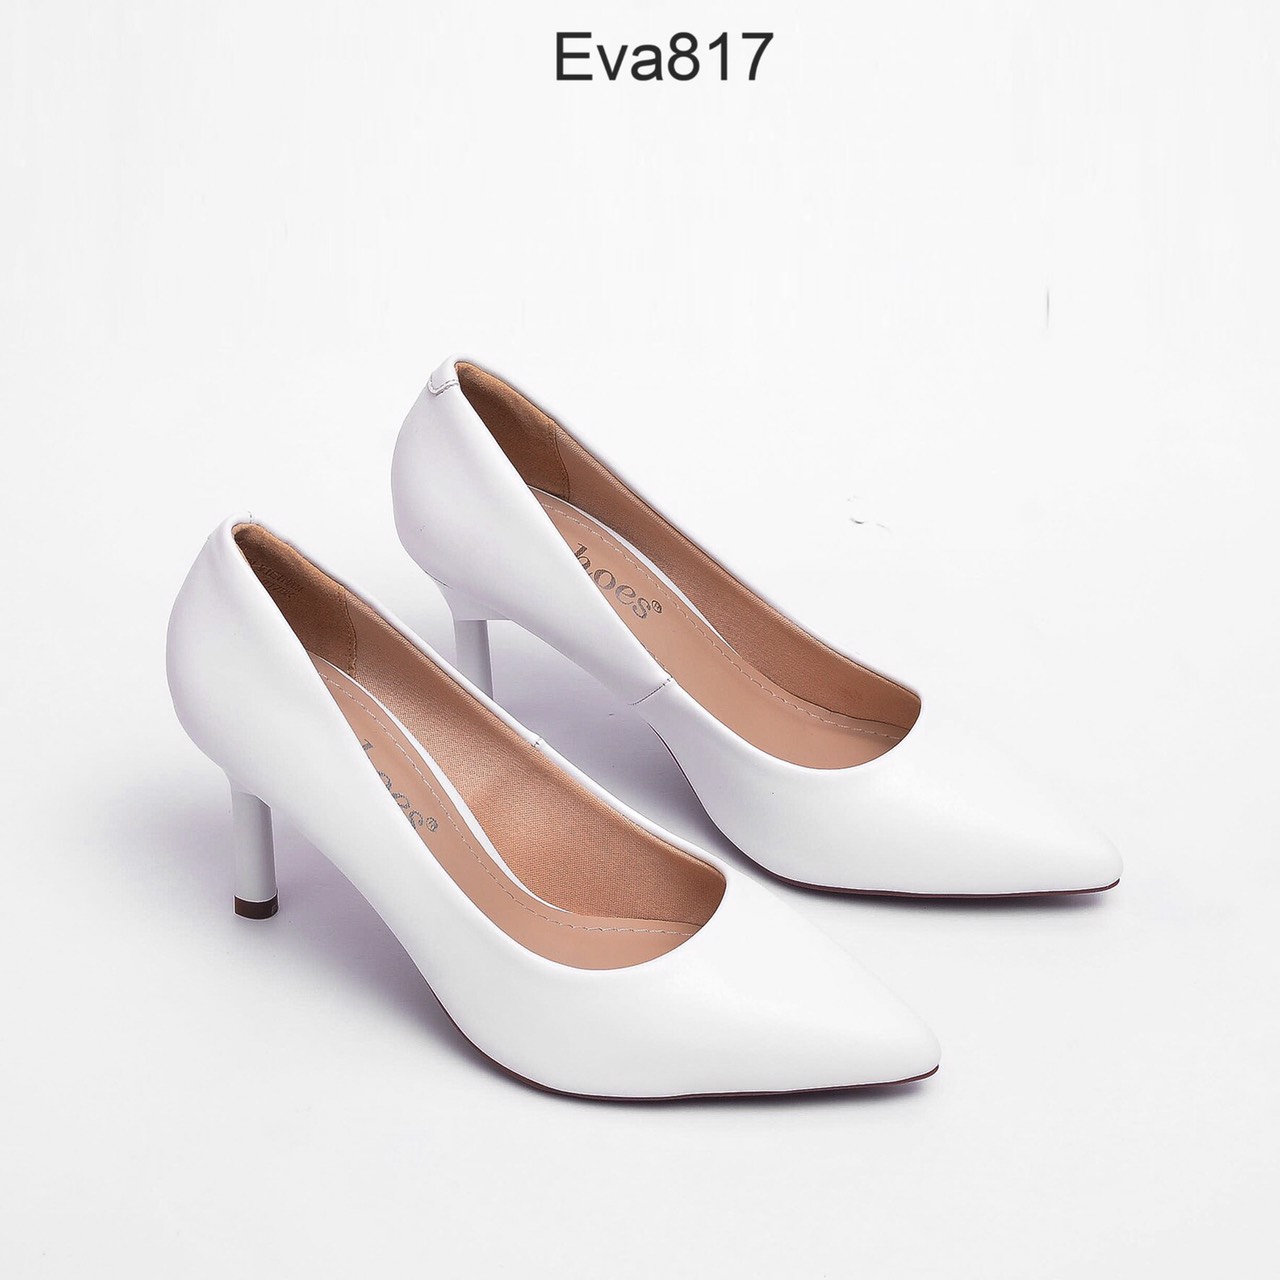 Giày công sở EVA817